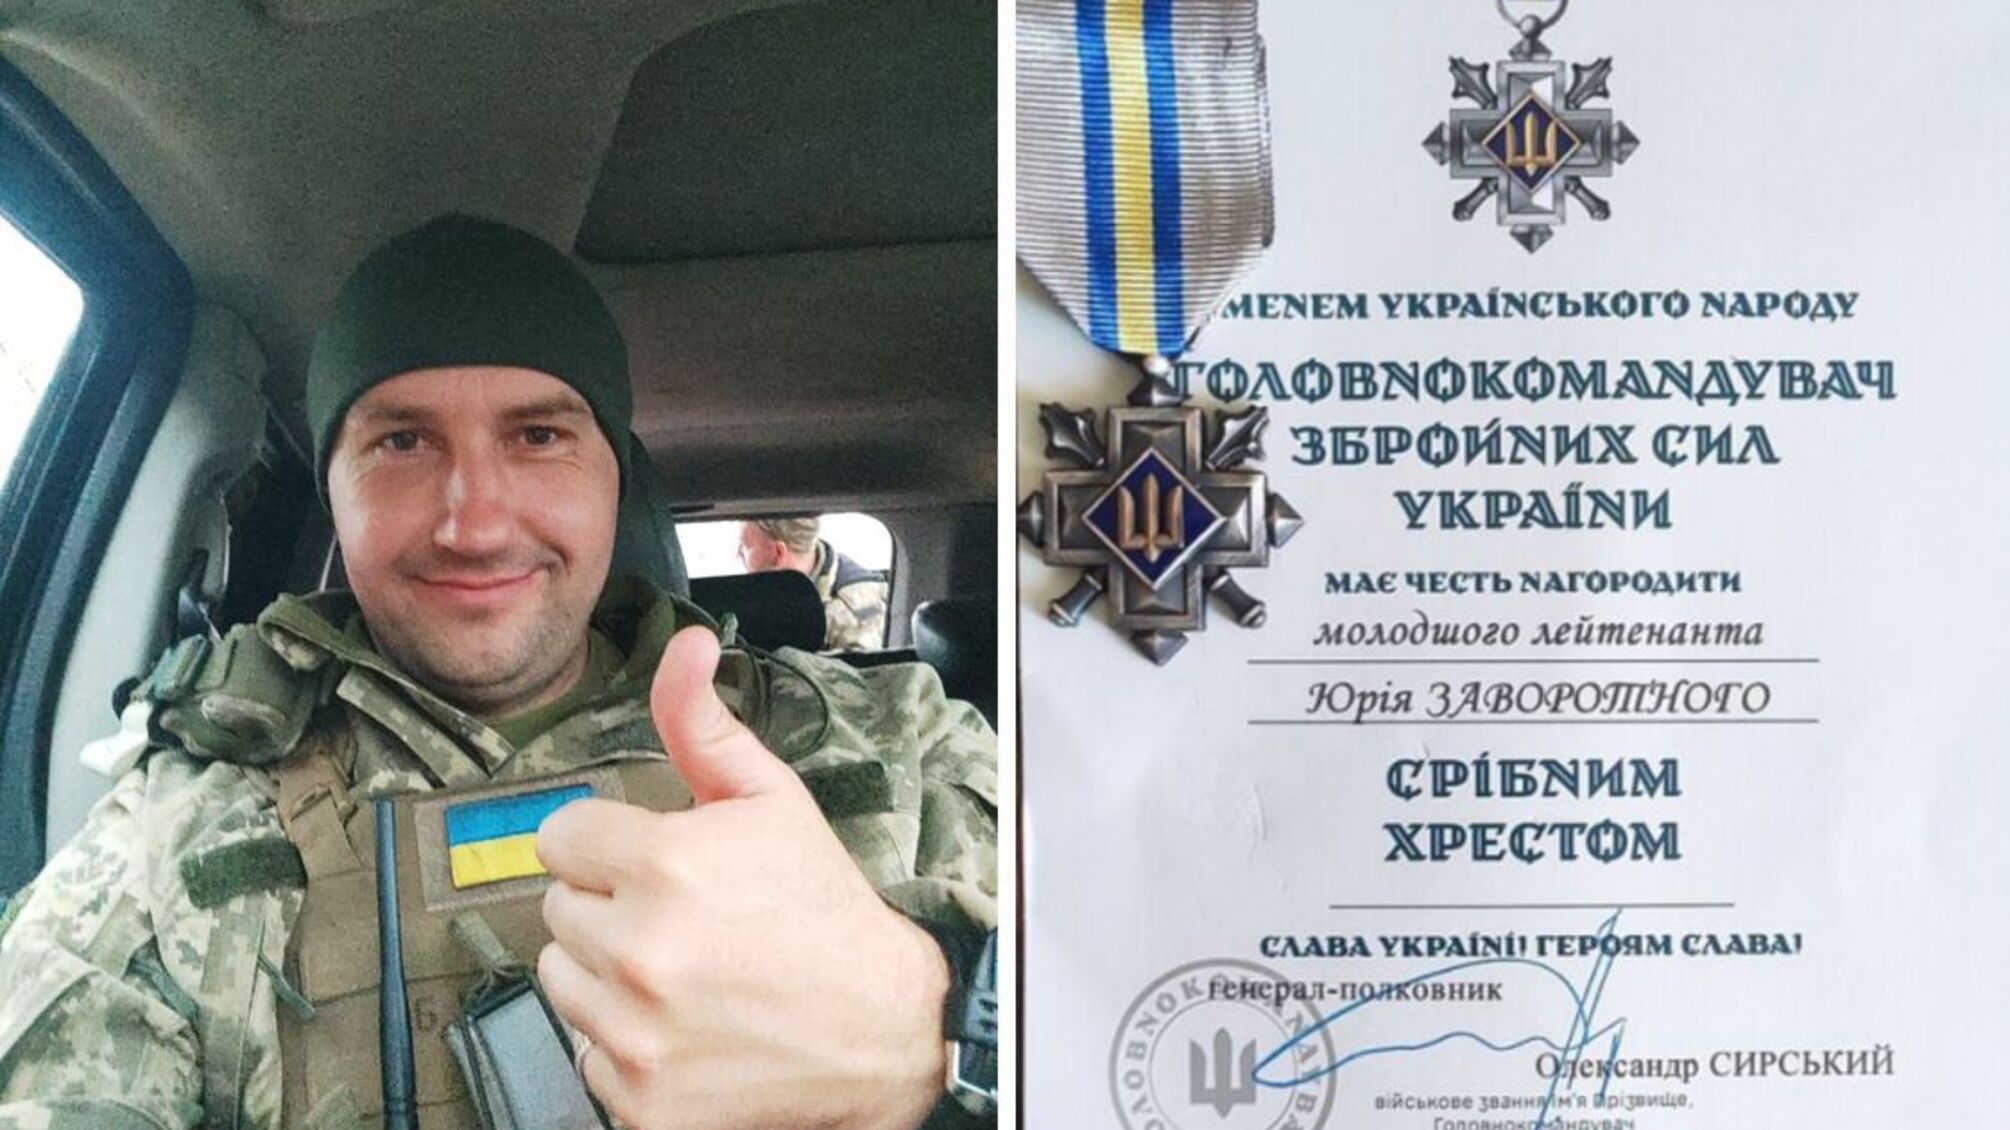 Стопкоровец из Черкасской области Юрий Заворотный получил награду